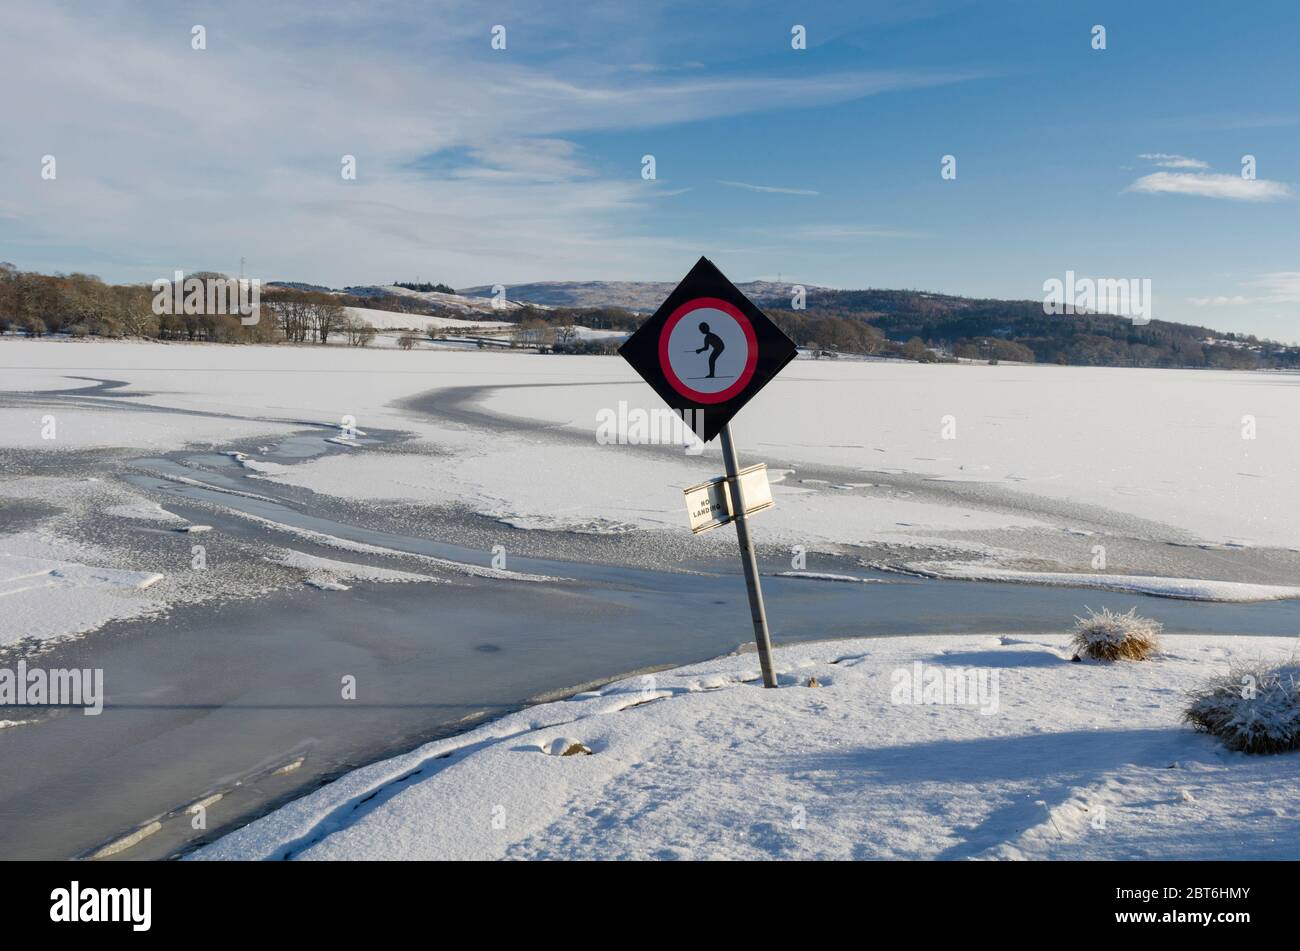 Non c'è nessuno sci d'acqua sull'acqua ghiacciata, commedia Foto Stock